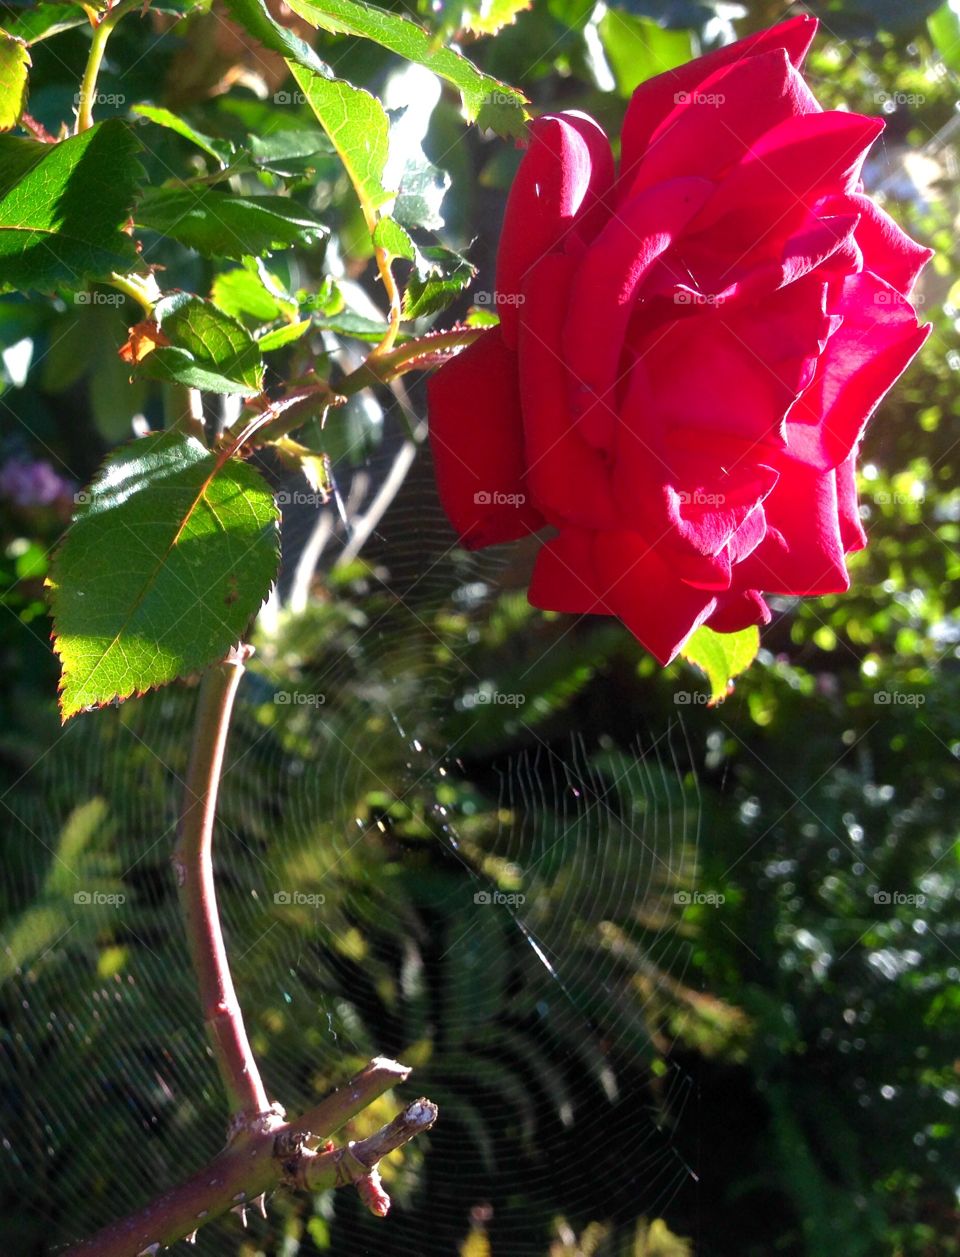 Morning rose. 